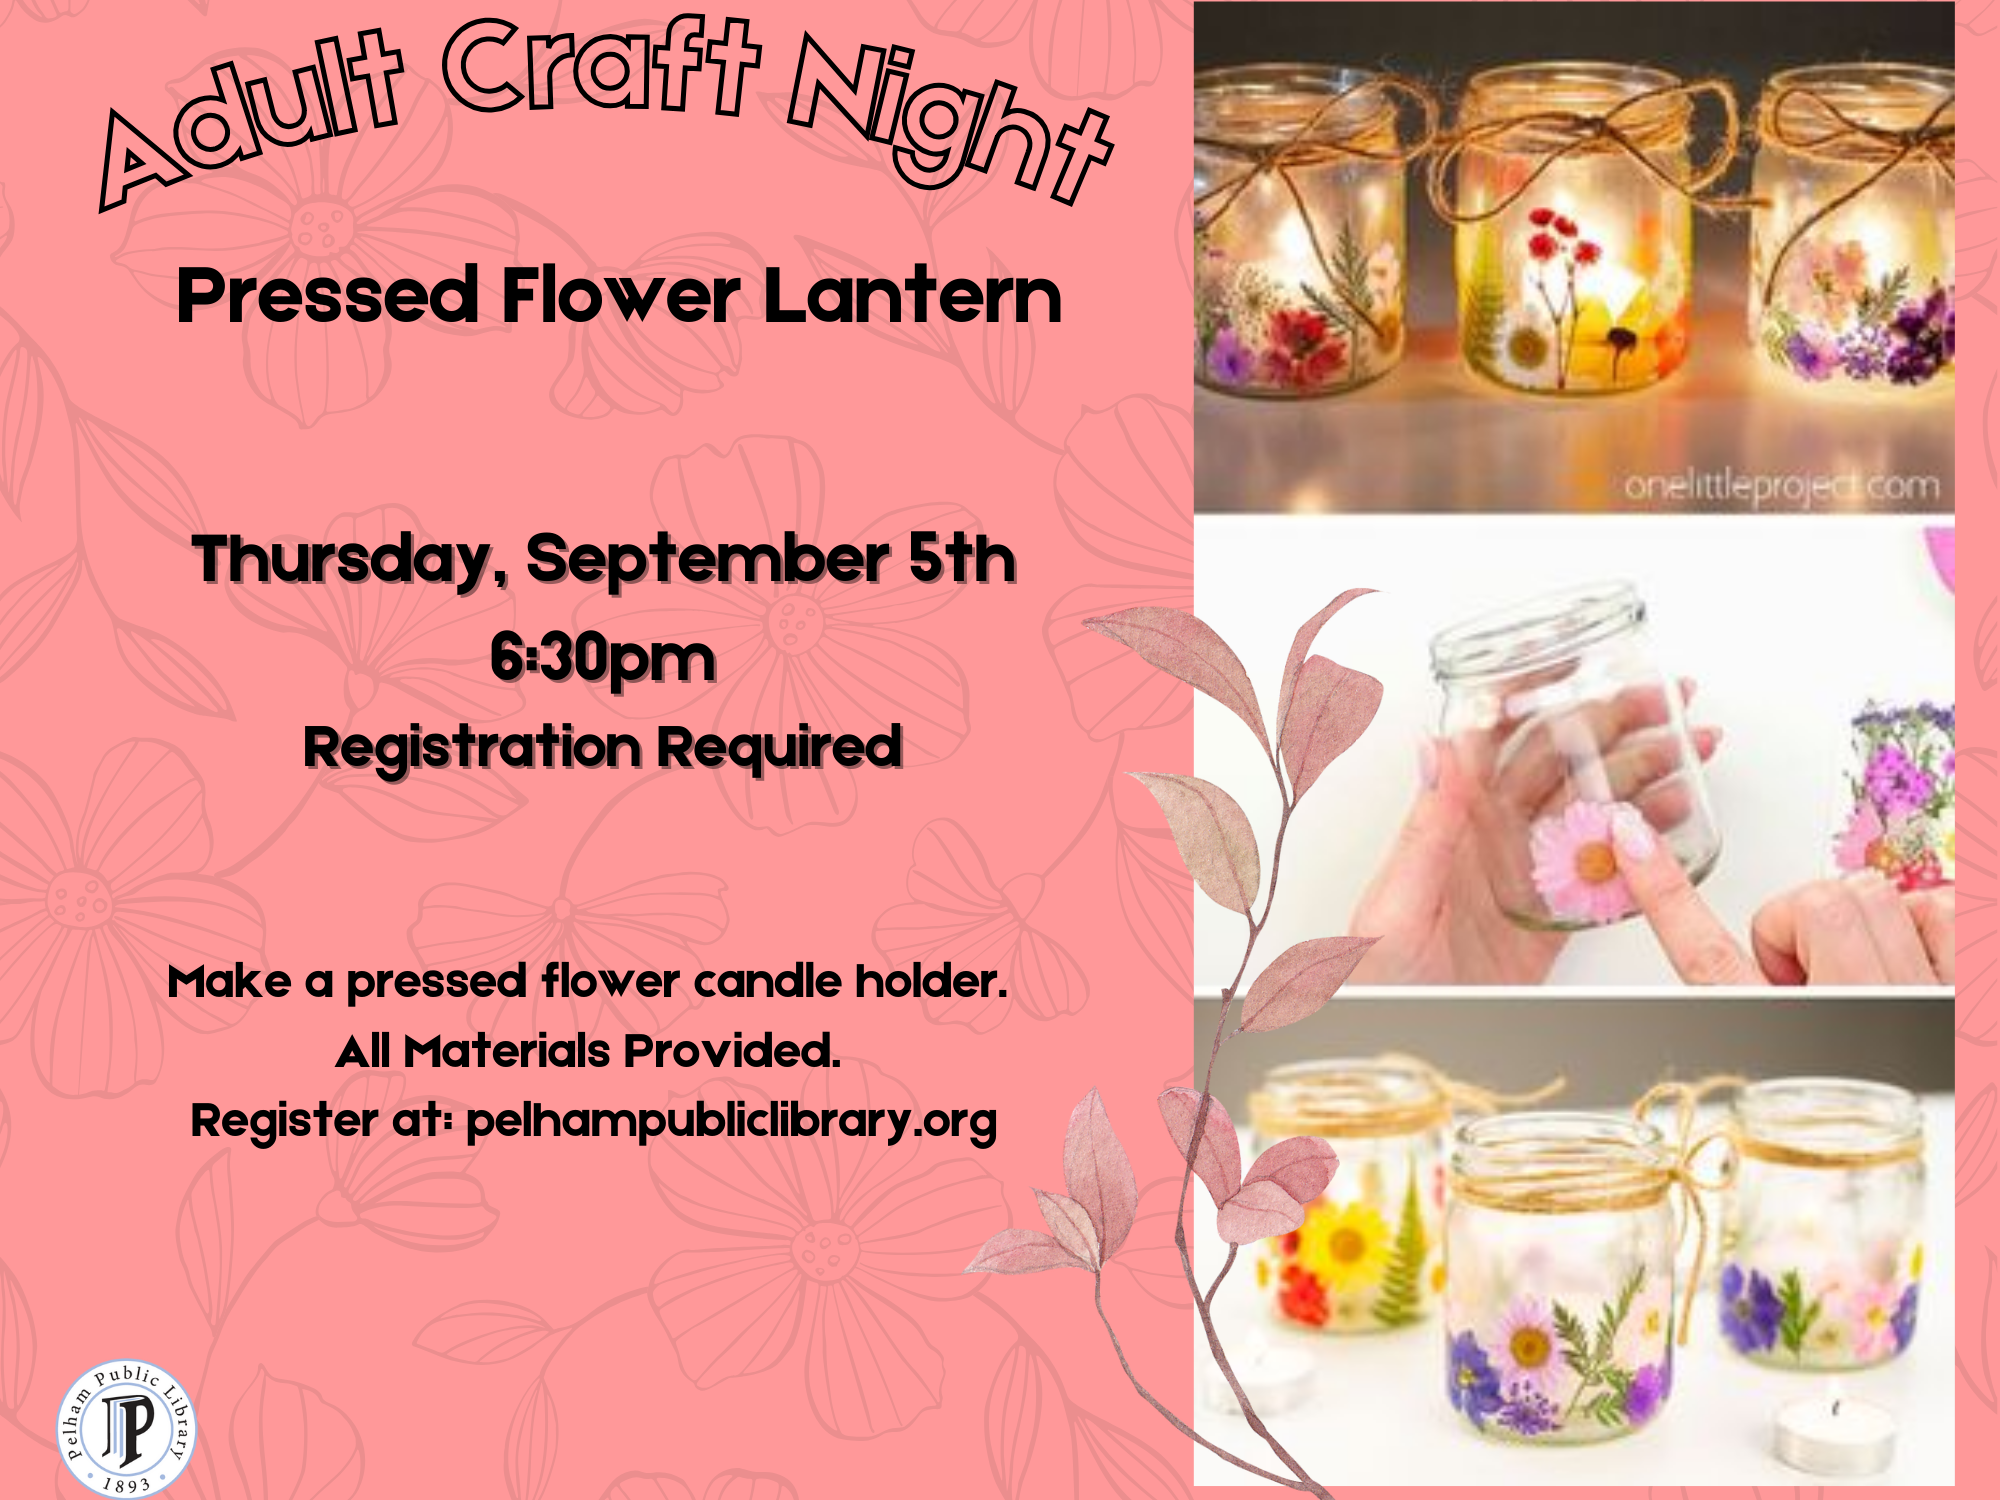 Pressed Flower Lantern, Thursday Sept. 5, 6:30pm